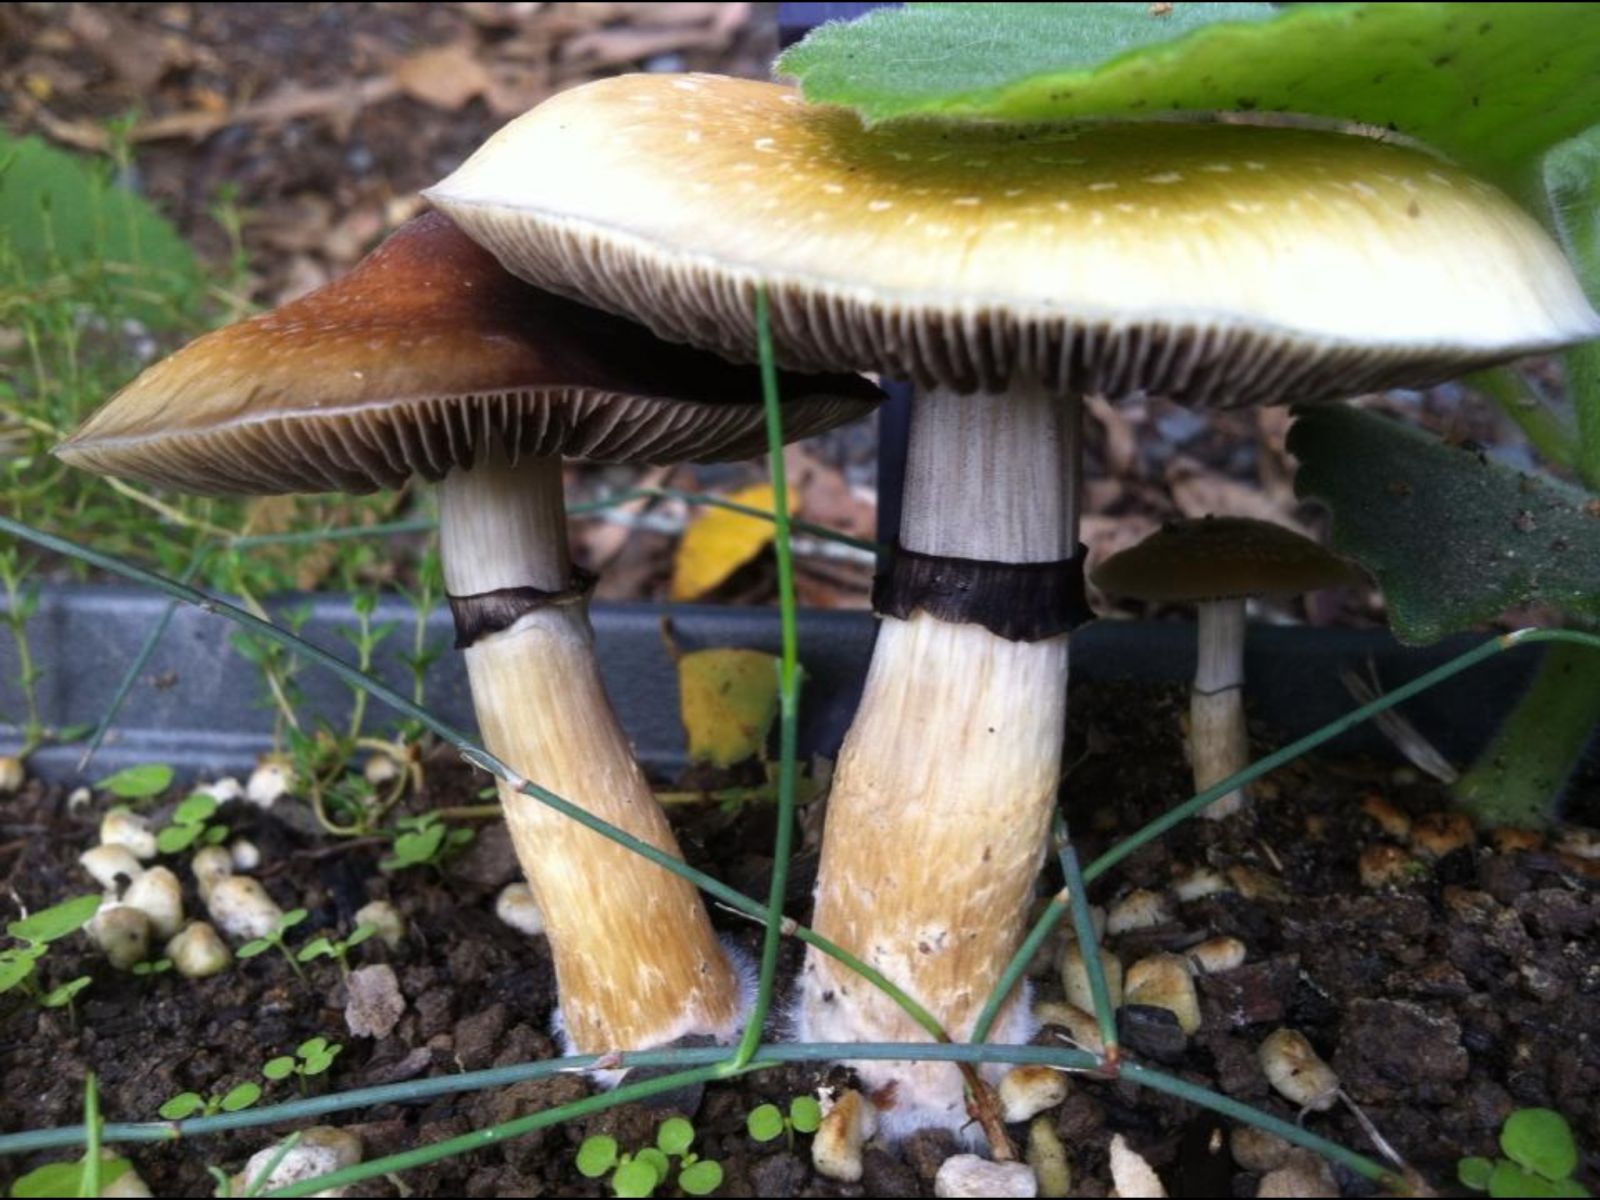 Outdoor Garden Psilicybe Mushrooms